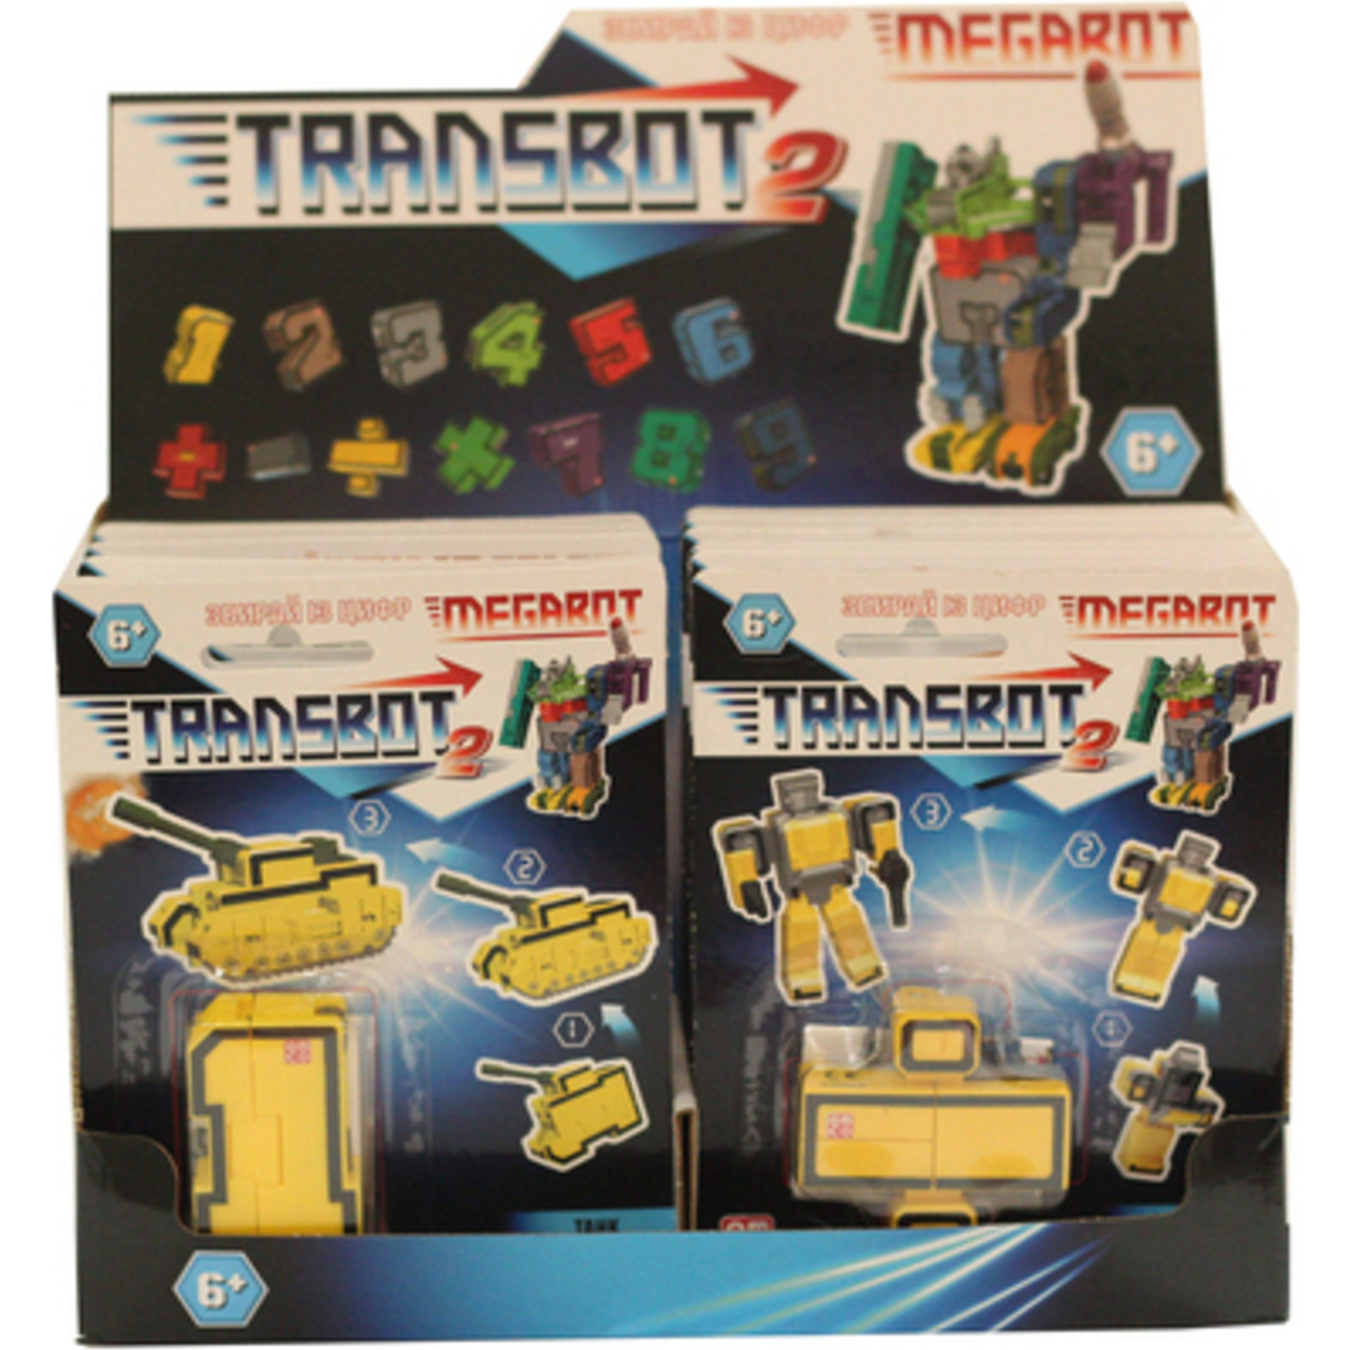 Transbot 6888 toy